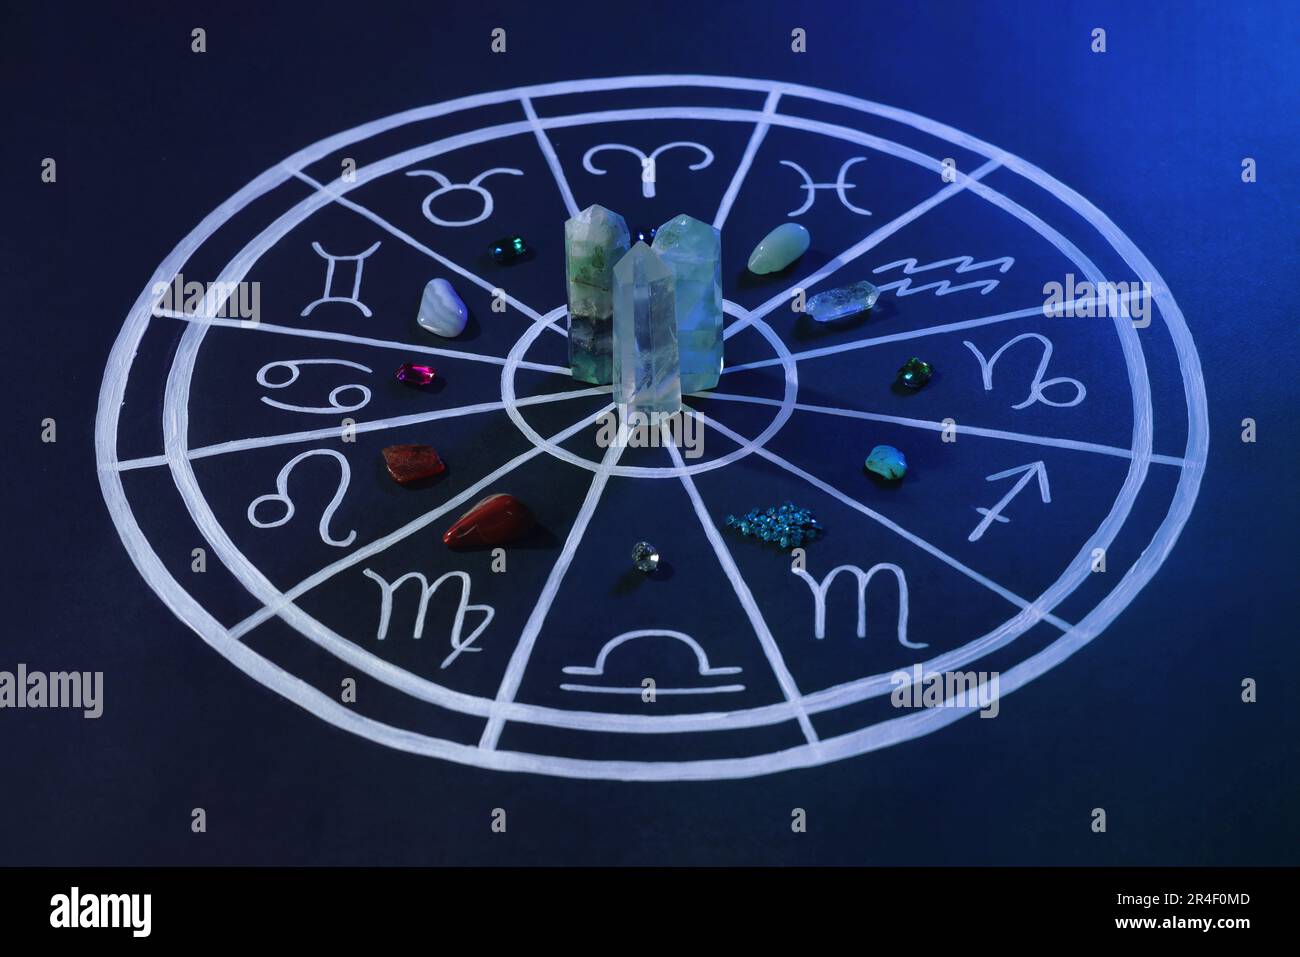 Pierres naturelles pour les signes du zodiaque et carte d'astrologie dessinée sur fond bleu foncé Banque D'Images